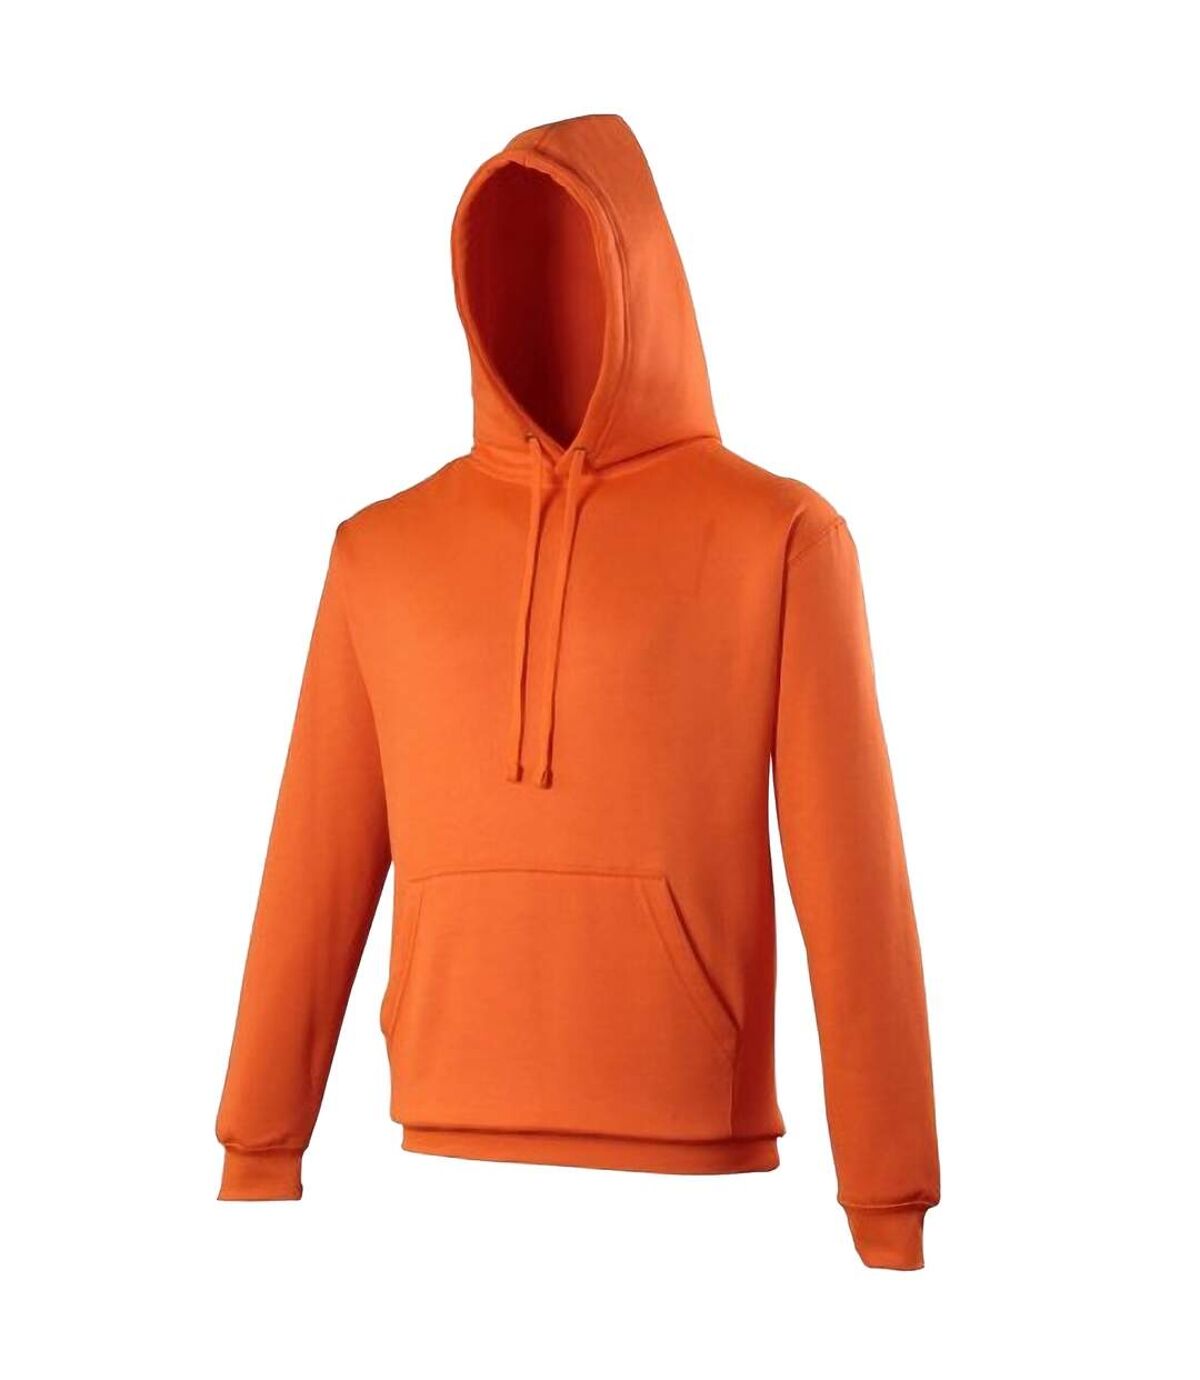 Awdis - Sweatshirt à capuche - Adulte unisexe (Orange électrique) - UTRW166